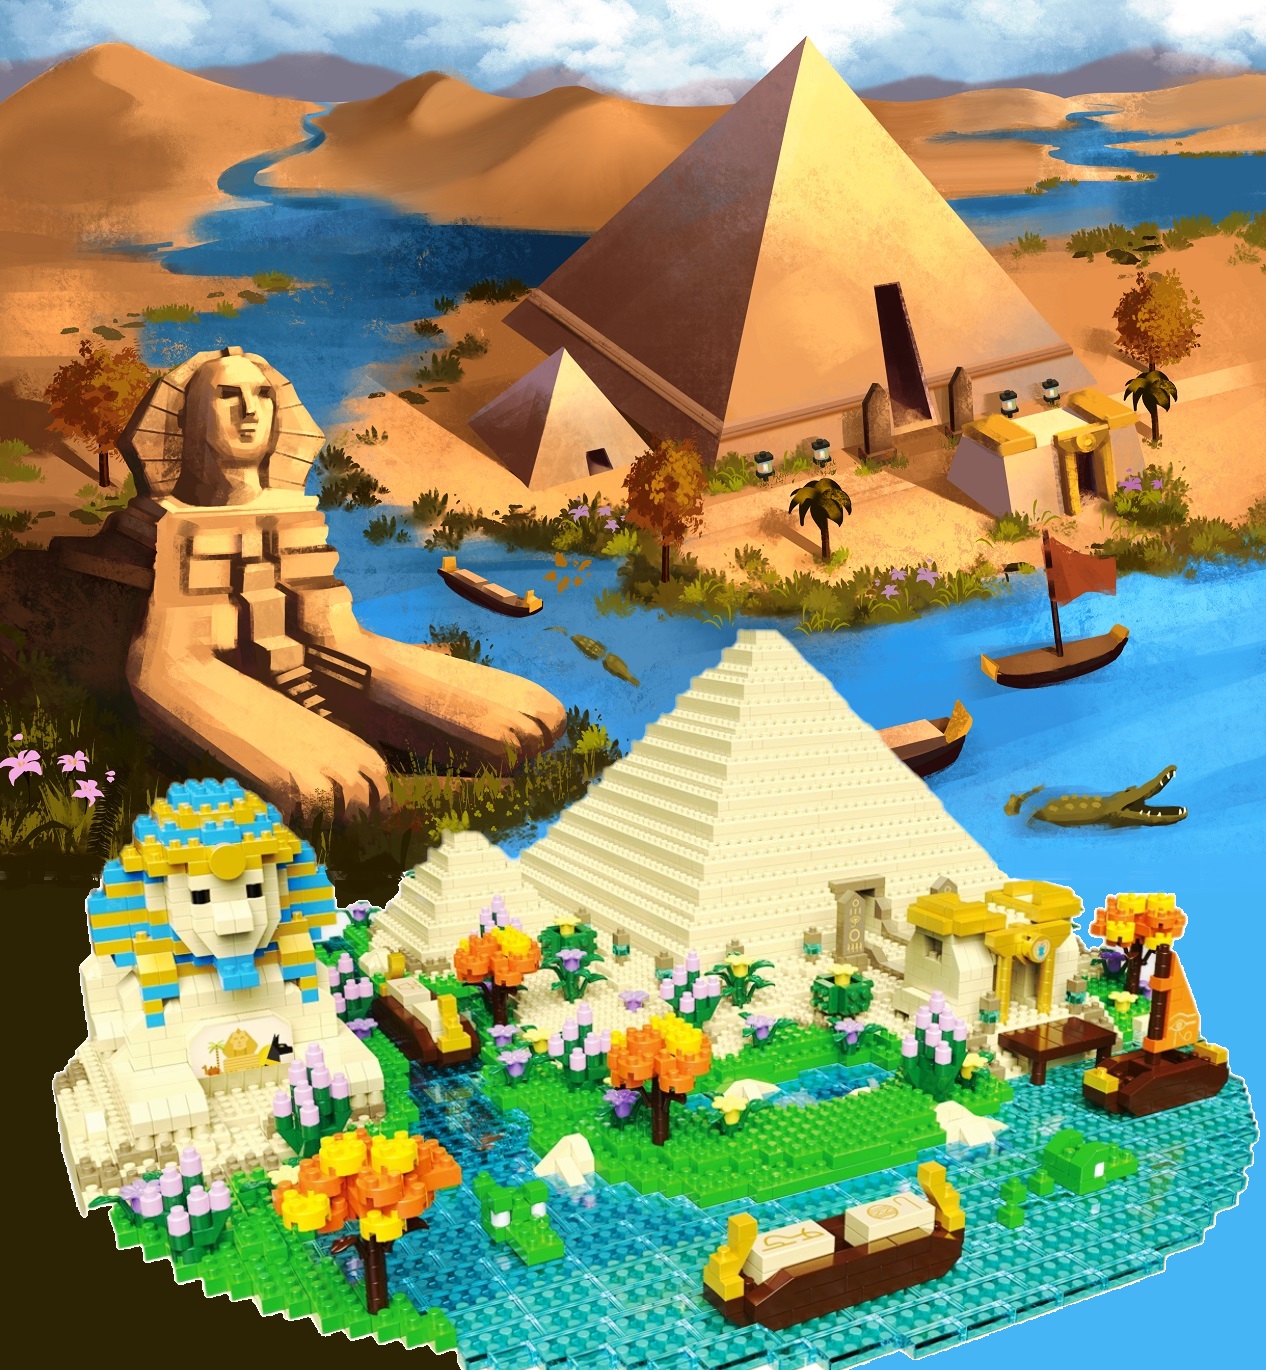 Конструктор 3D из миниблоков DAIA Египетские пирамиды и Сфинкс 3968 элементов - DI668-17 конструктор 3d из миниблоков daia египетские пирамиды и сфинкс 3968 элементов di668 17